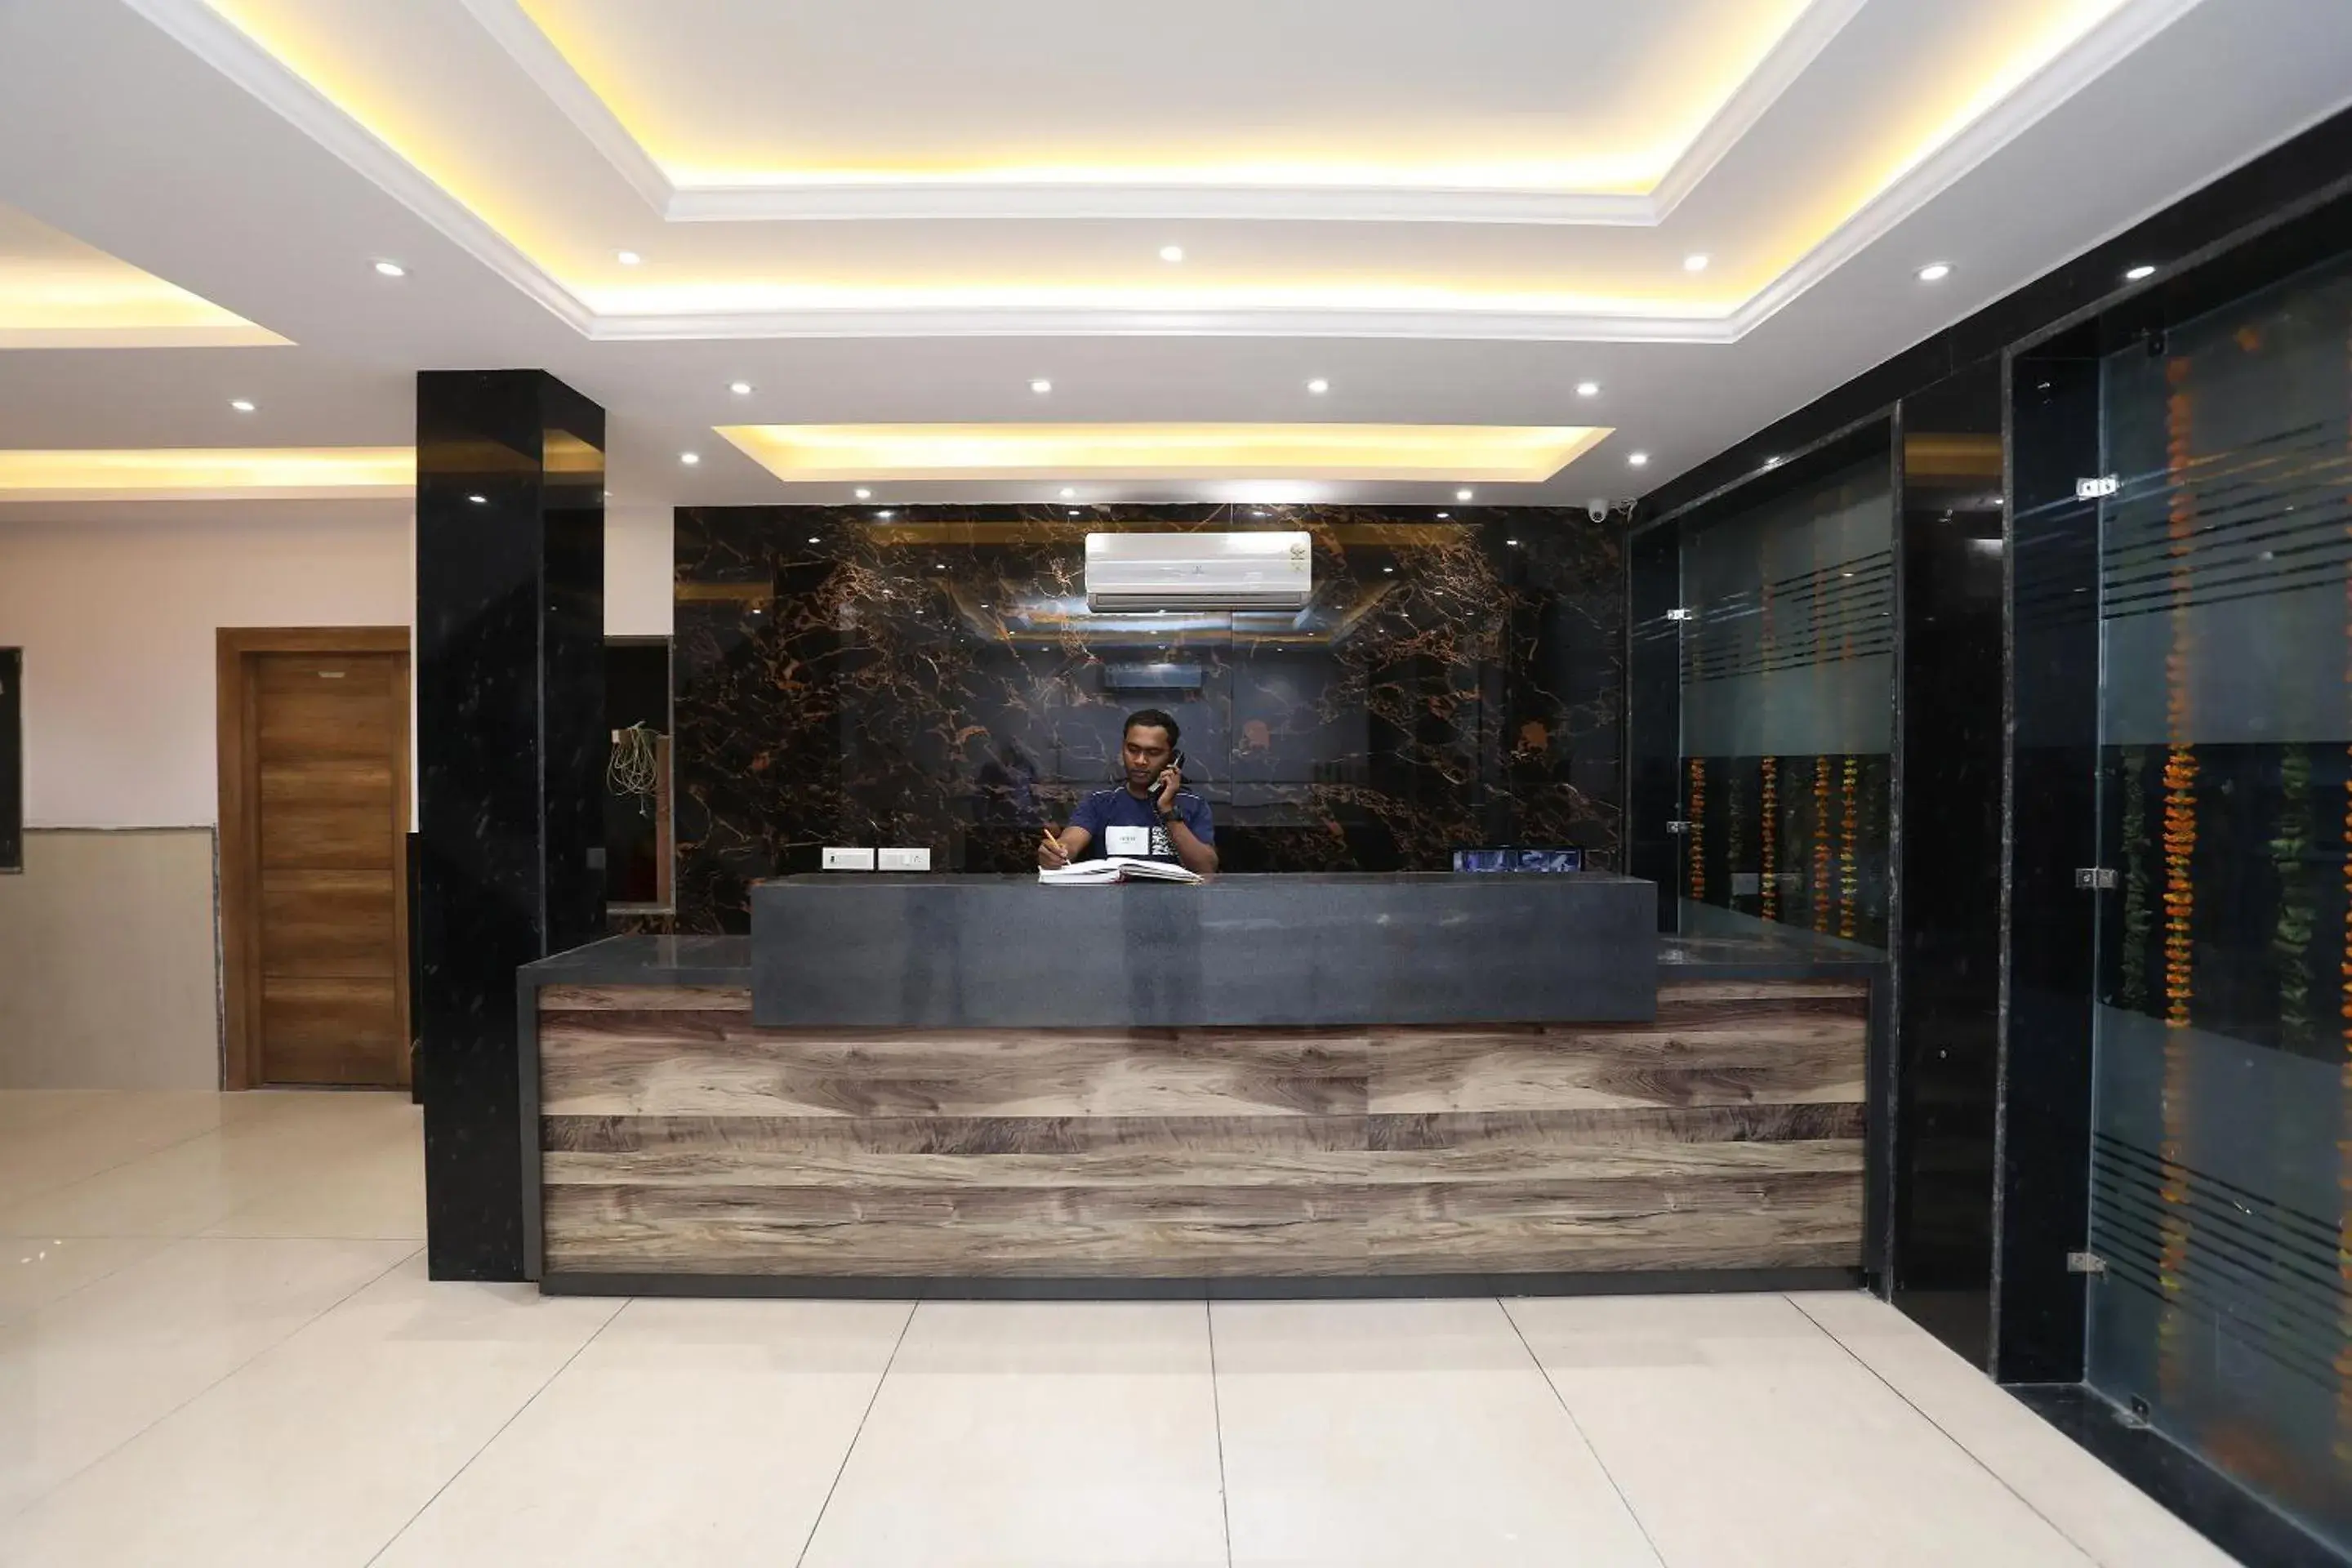 Lobby or reception, Lobby/Reception in OYO Hotel Ivy